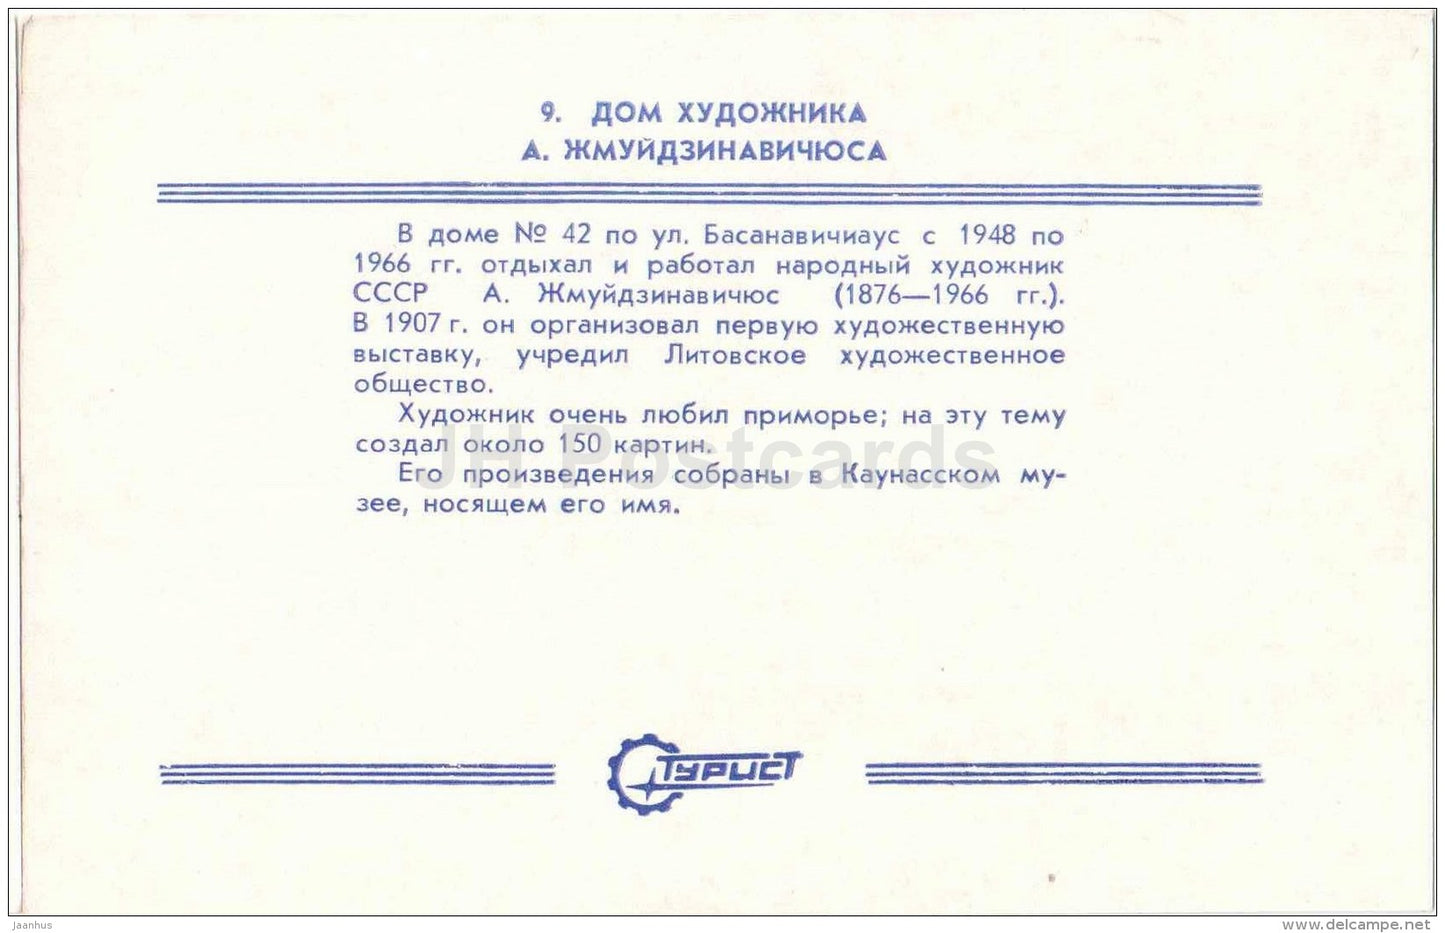 house of painter Antanas Zmuidzinavicius - Palanga - Turist - 1987 - Lithuania USSR - unused - JH Postcards